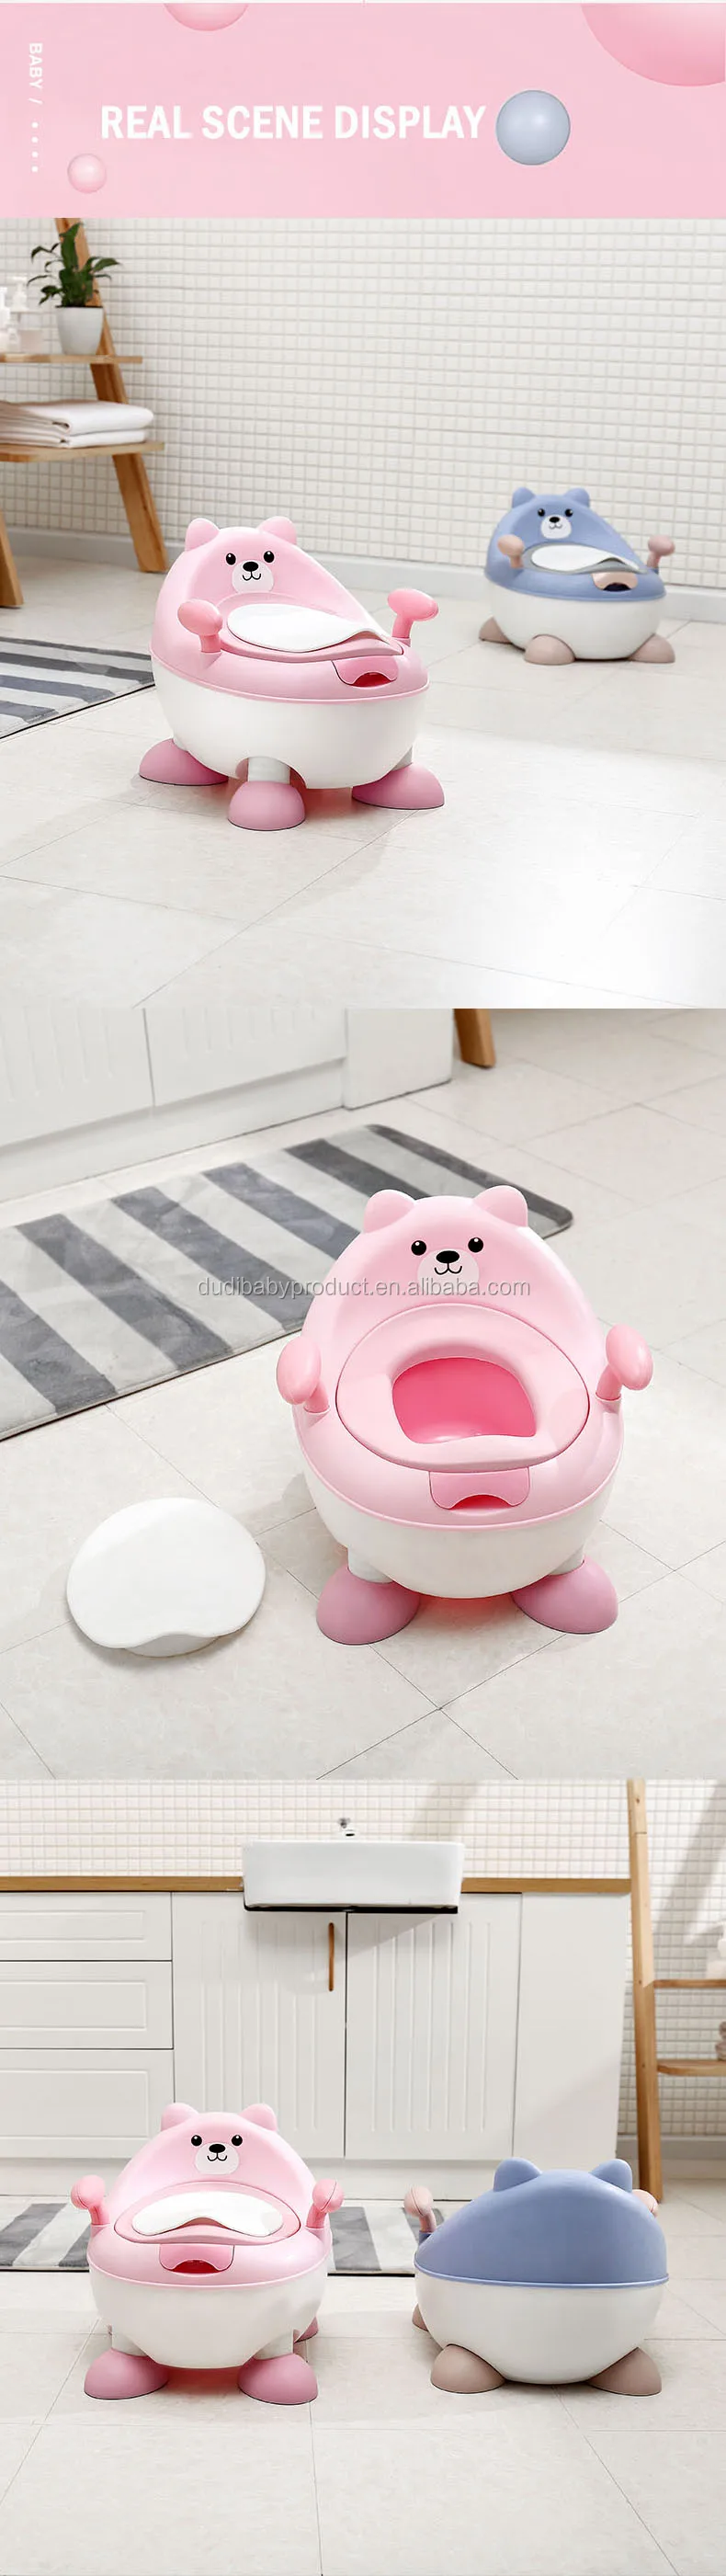 Медведь Детский горшок многофункциональный туалет горшок Детский горшок тренировочный горшок для девочек горшок для мальчика стул Туалет бесплатно горшок щетка+ мешок для чистки